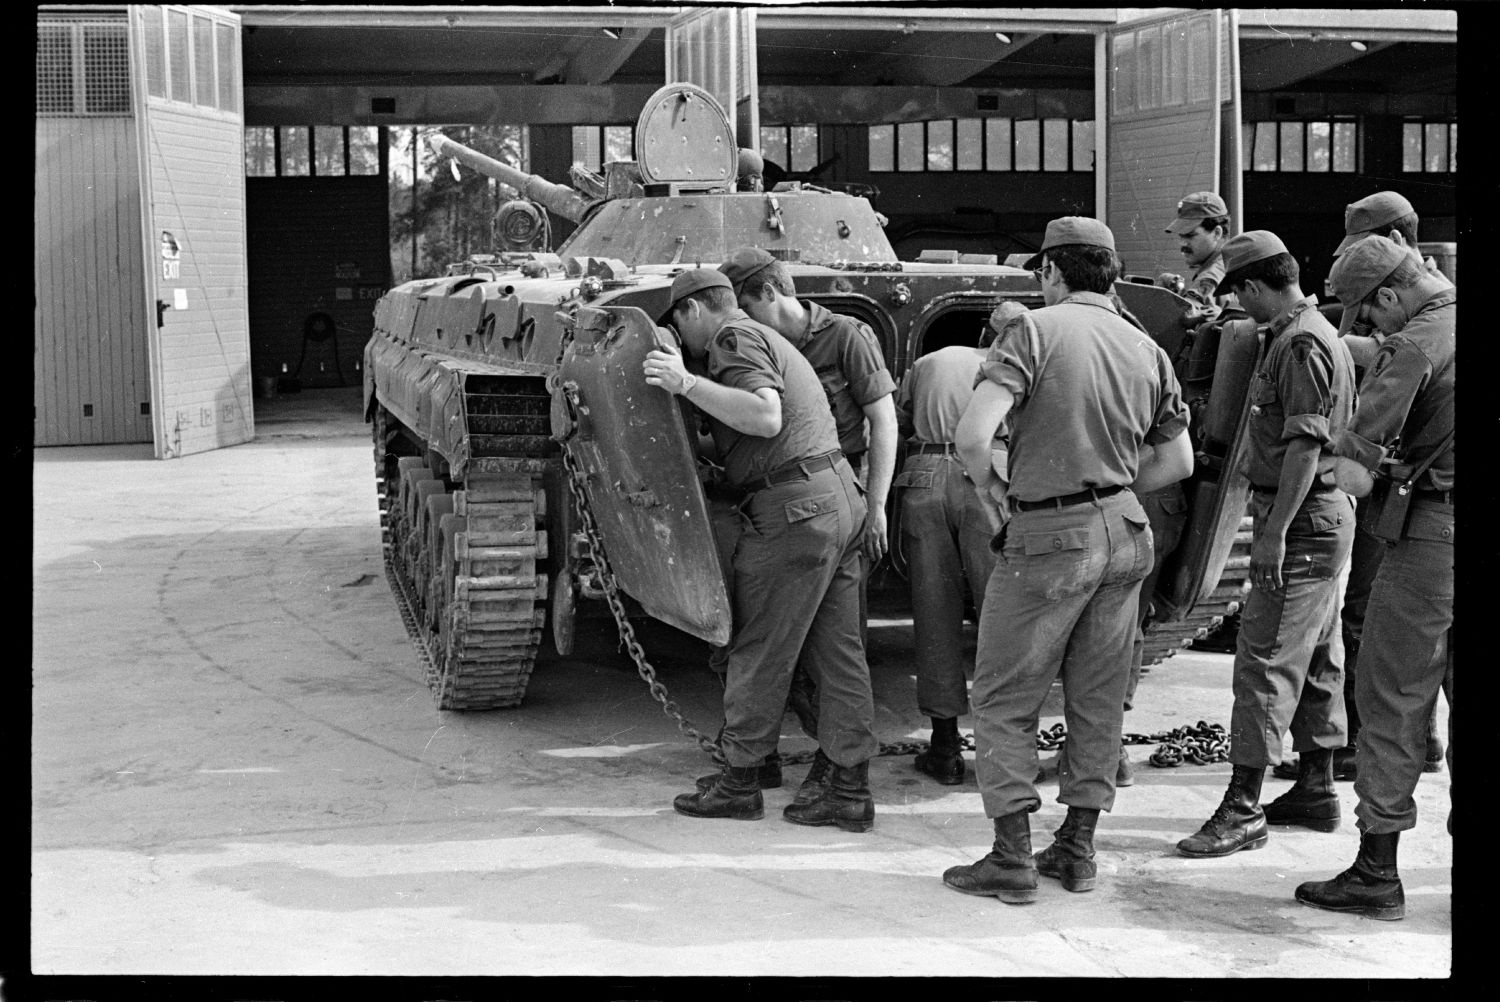 s/w-Fotografie: Militärische Ausbildung der U.S. Army Berlin Brigade (AlliiertenMuseum/U.S. Army Photograph Public Domain Mark)